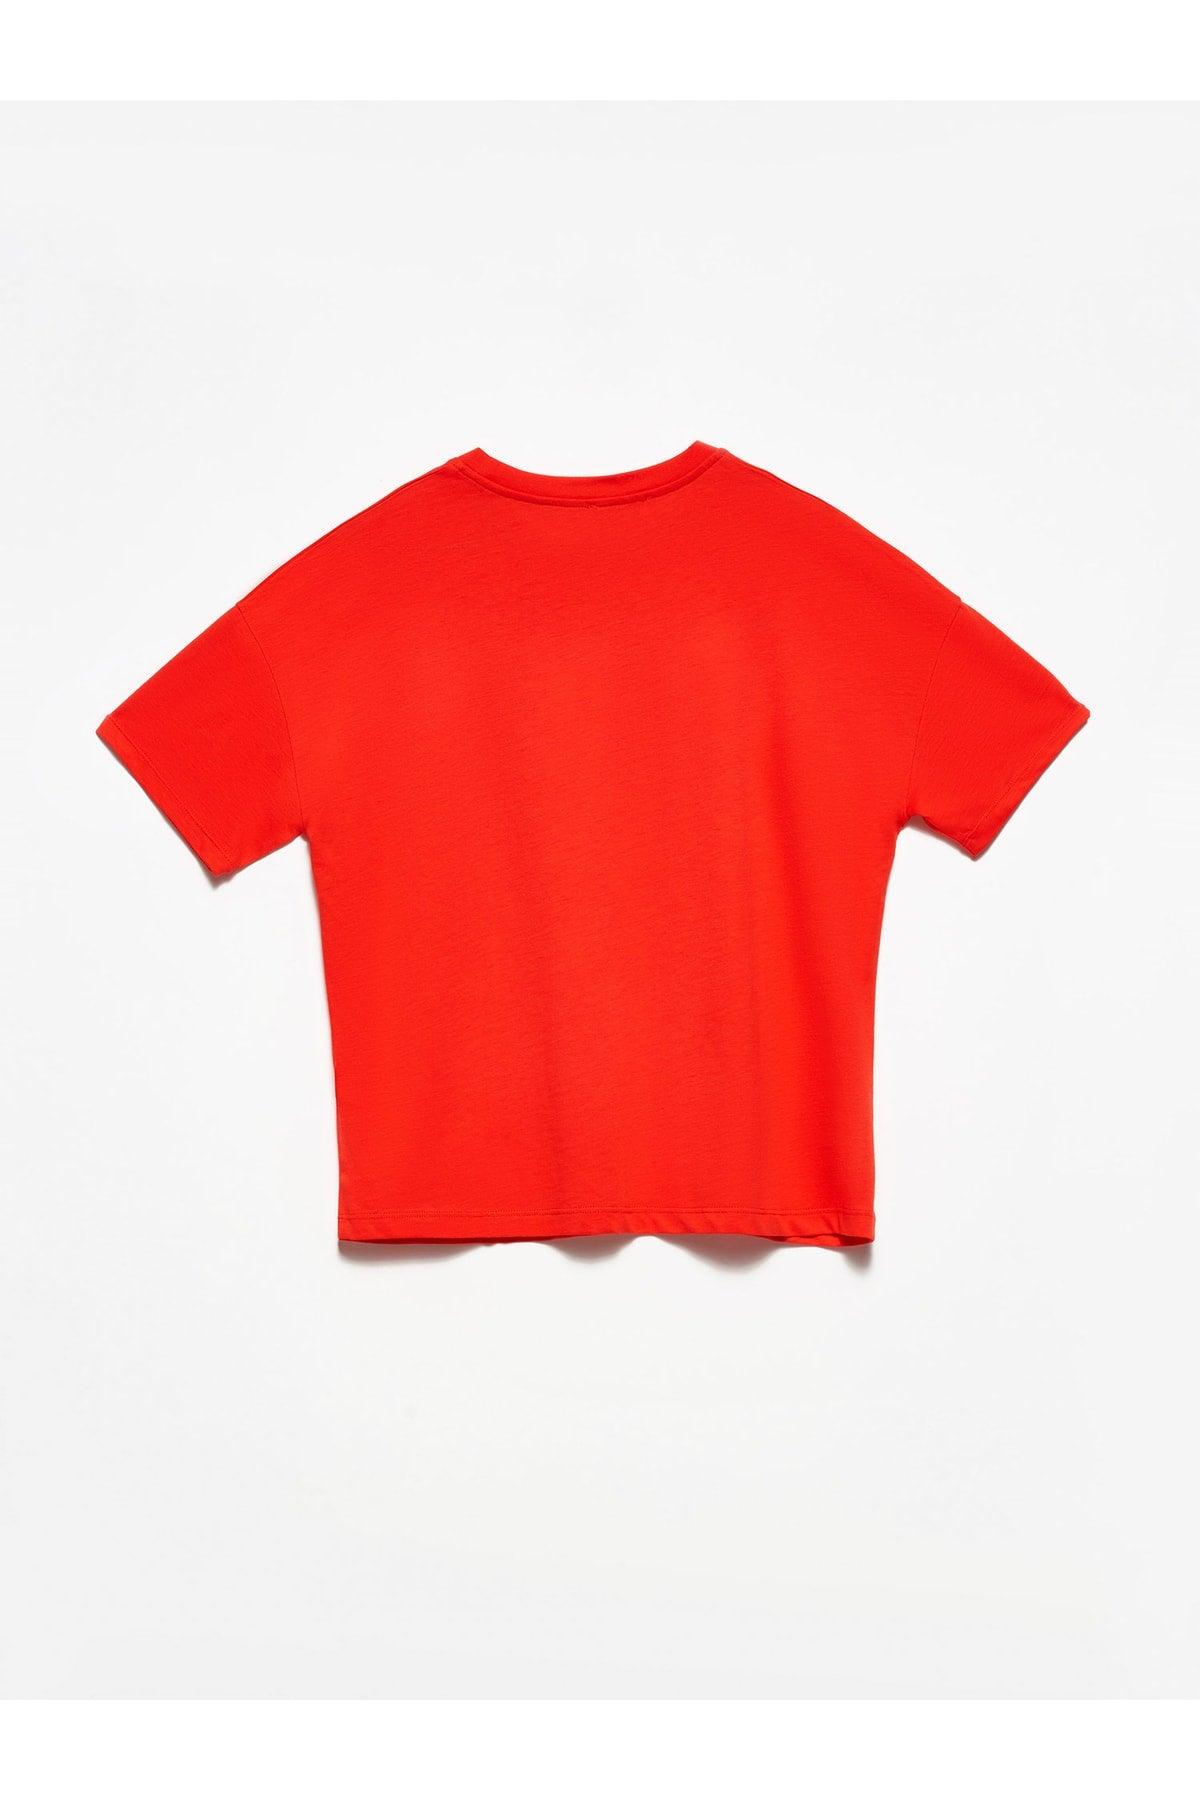 Women's Red Basic T-shirt - Swordslife